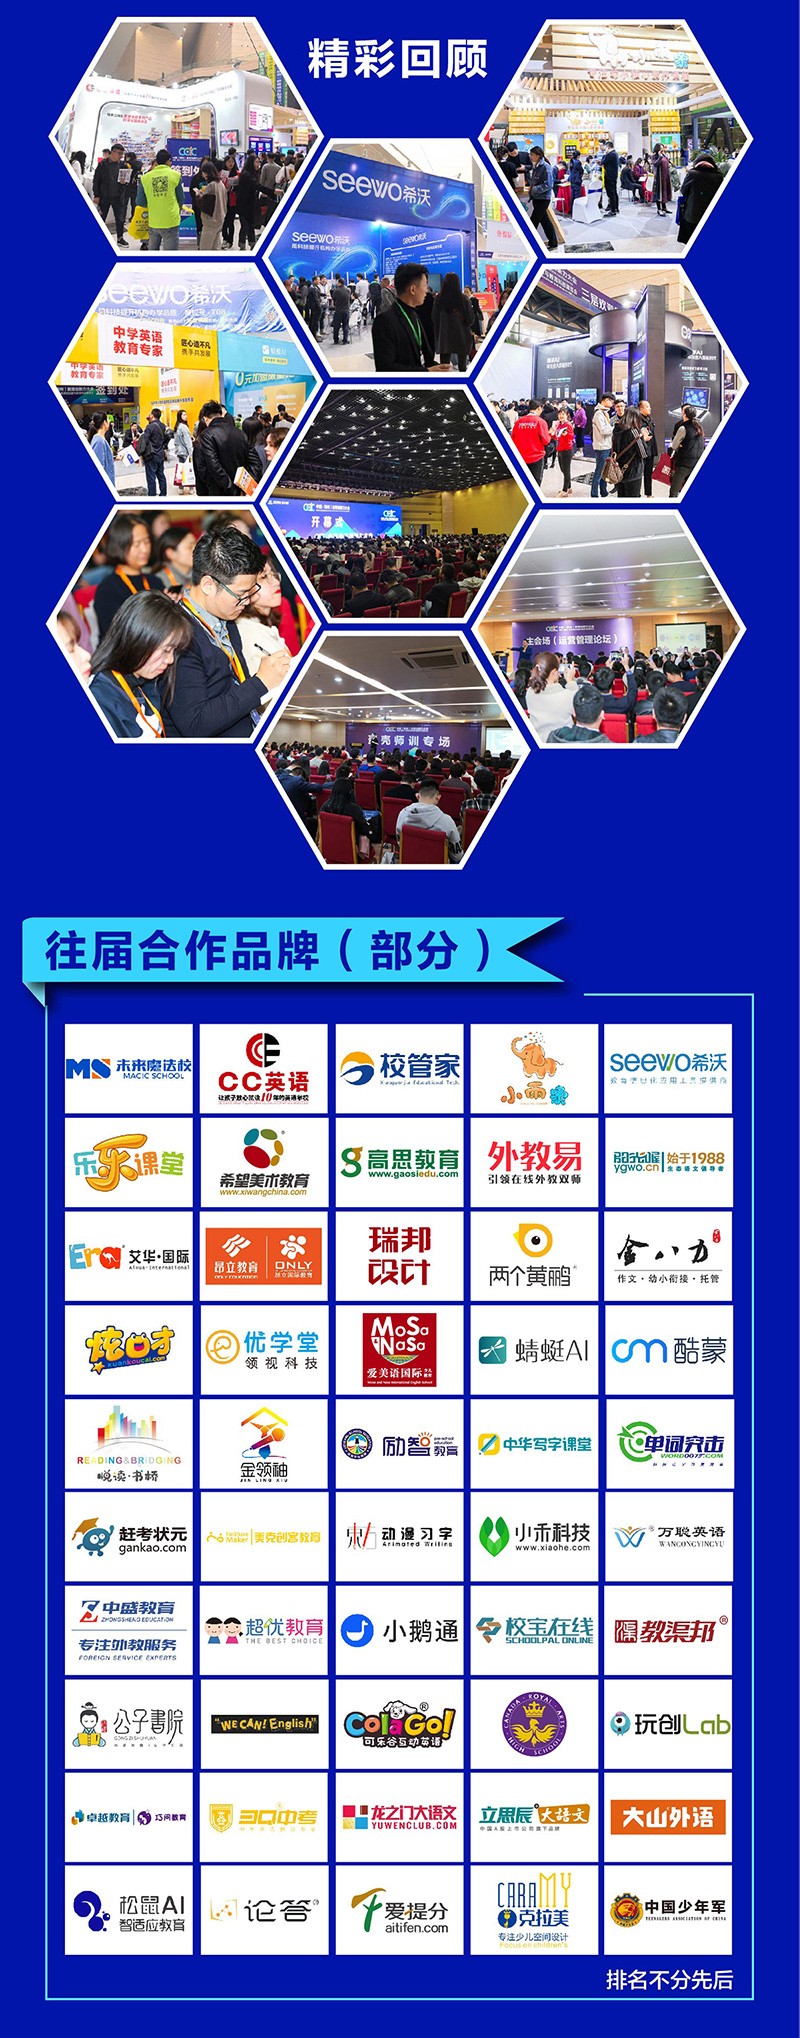 2020中國教育加盟與教育科技展覽會